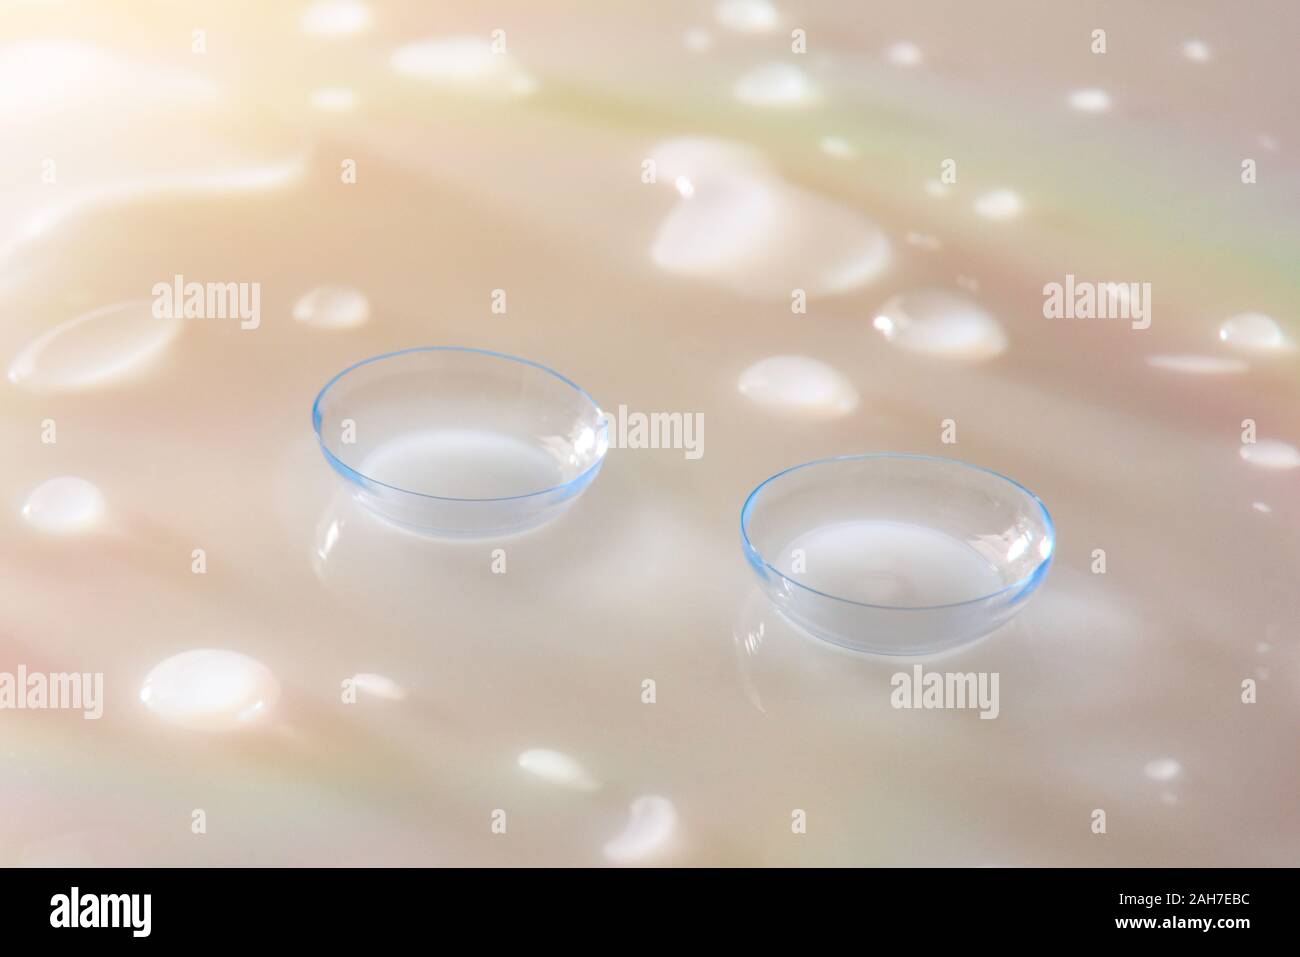 Kontaktlinsen auf weißem Glas reflektierende Tabelle mit Wassertropfen und Farbe Reflexionen. Horizontale Komposition. Erhöhte anzeigen. Stockfoto